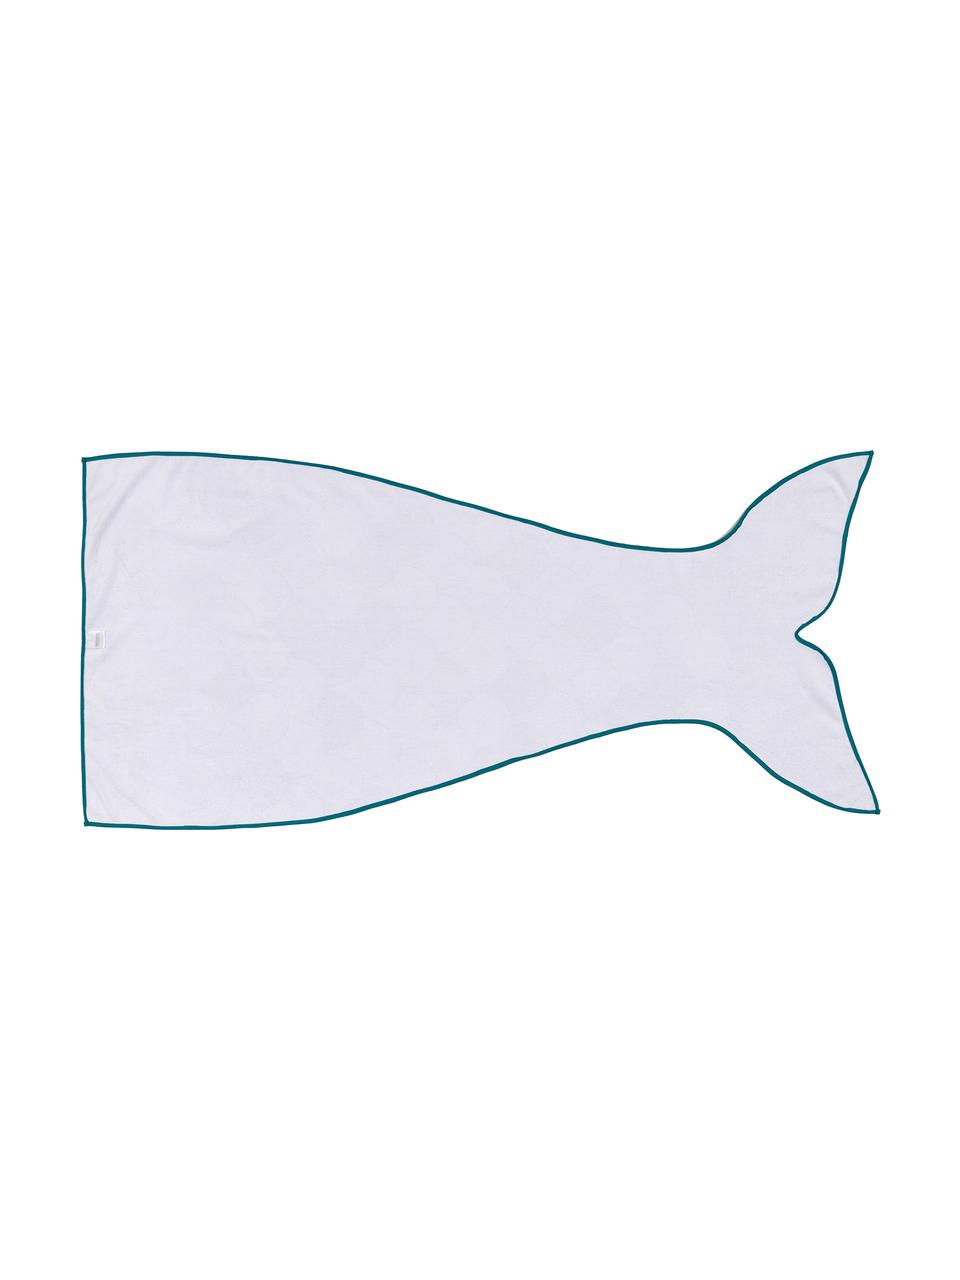 Ręcznik plażowy Mermaid, 55% poliester, 45% bawełna
Bardzo niska gramatura 340 g/m², Jasny niebieski, turkusowy, biały, S 87 x D 180 cm